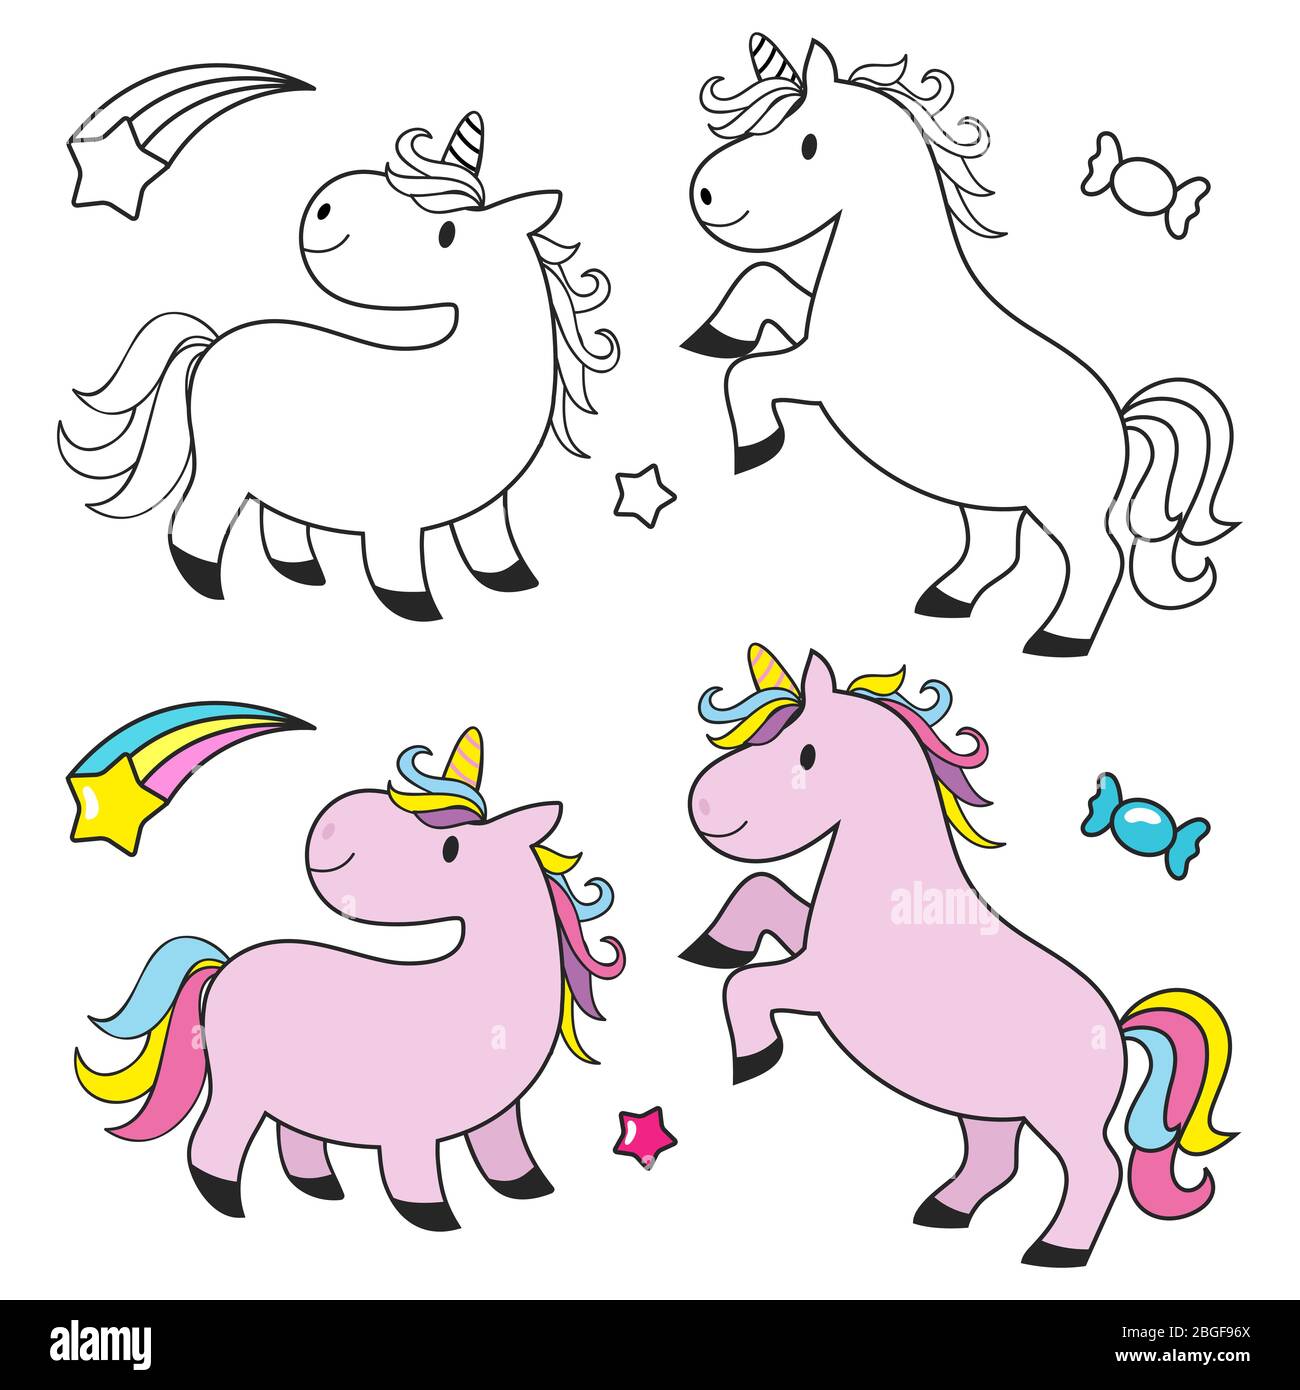 Joli kit unicorn pour livre de colorations pour enfants. Fée UNICORN, cheval magique heureux, illustration vectorielle Illustration de Vecteur